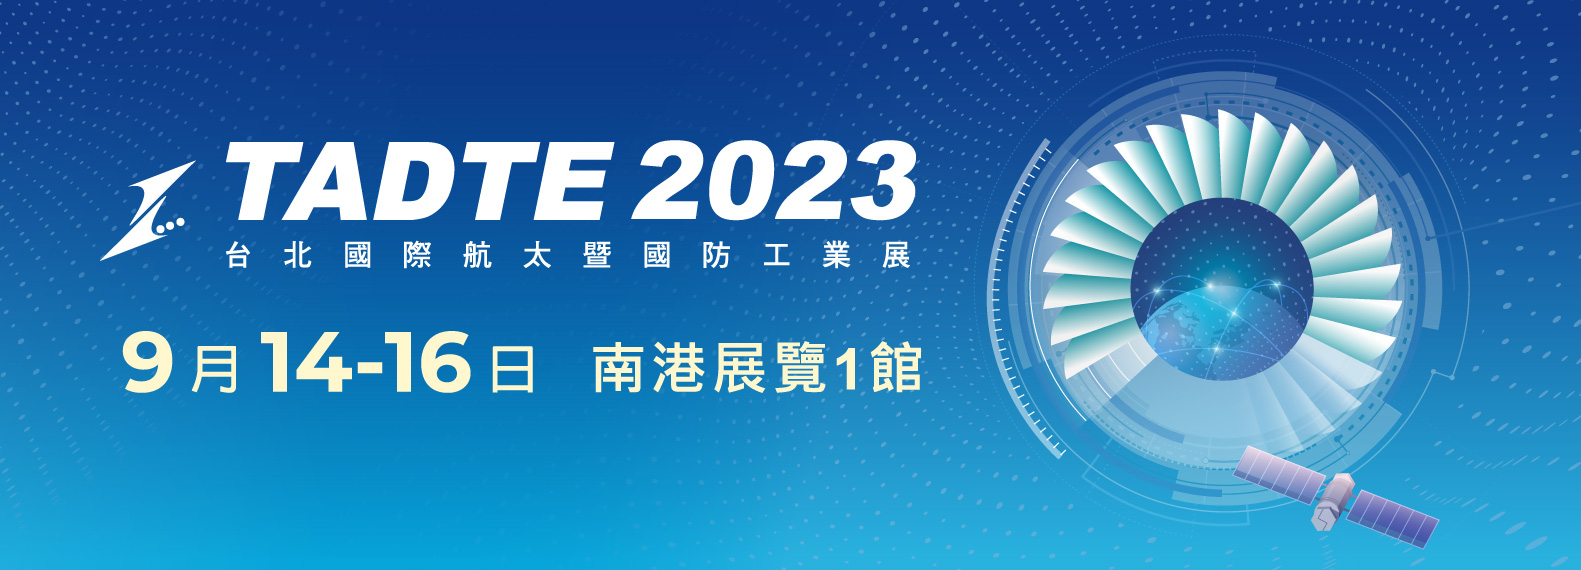 台灣低軌衛星產業聯誼會 前進「Satellite 2023」連線報導 No.6_仰望與期待